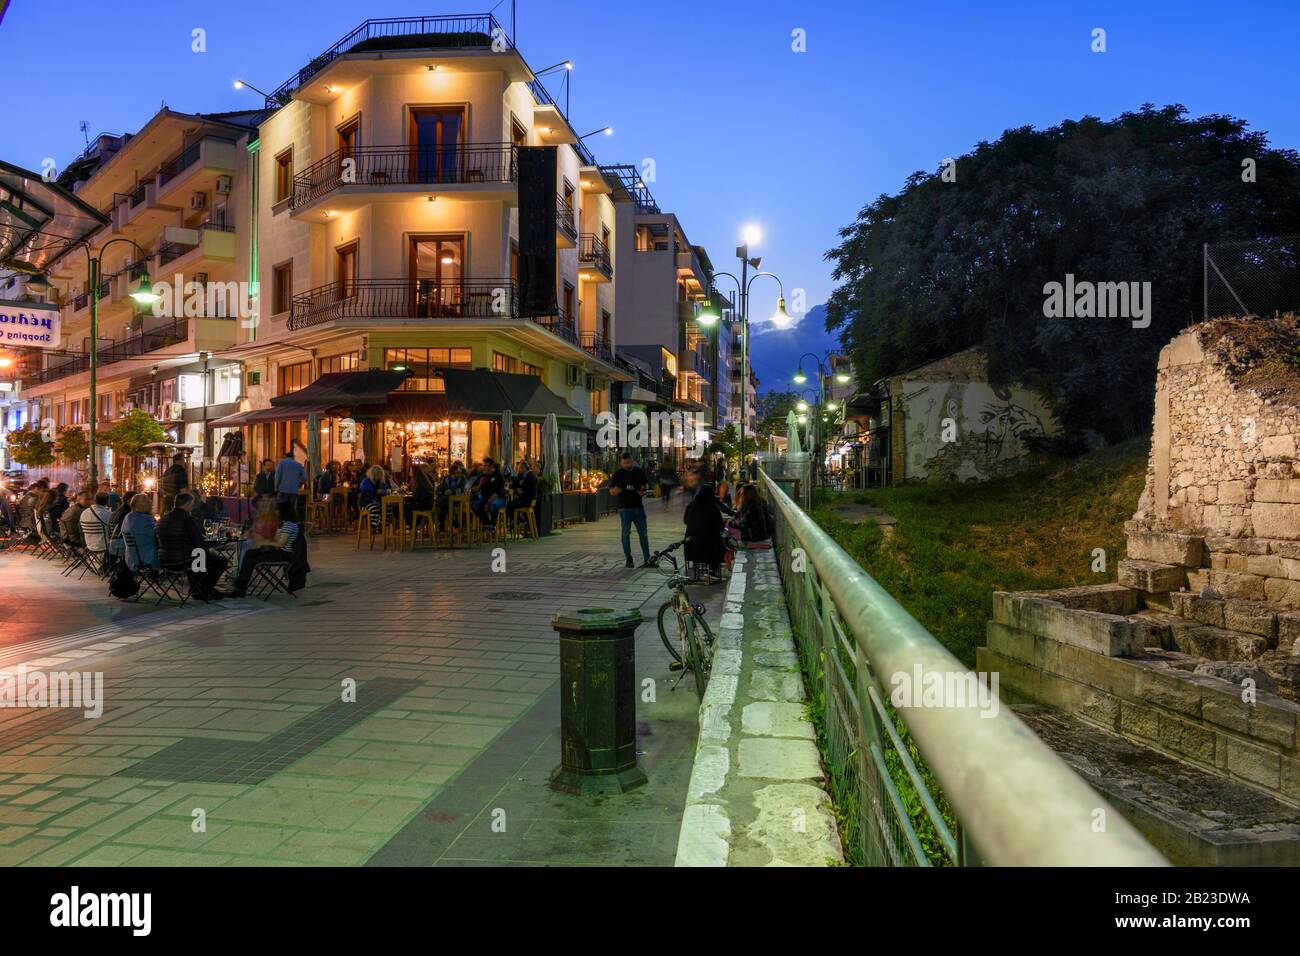 Strada pedonale con negozi, caffè e gente a Larissa, Grecia Foto Stock